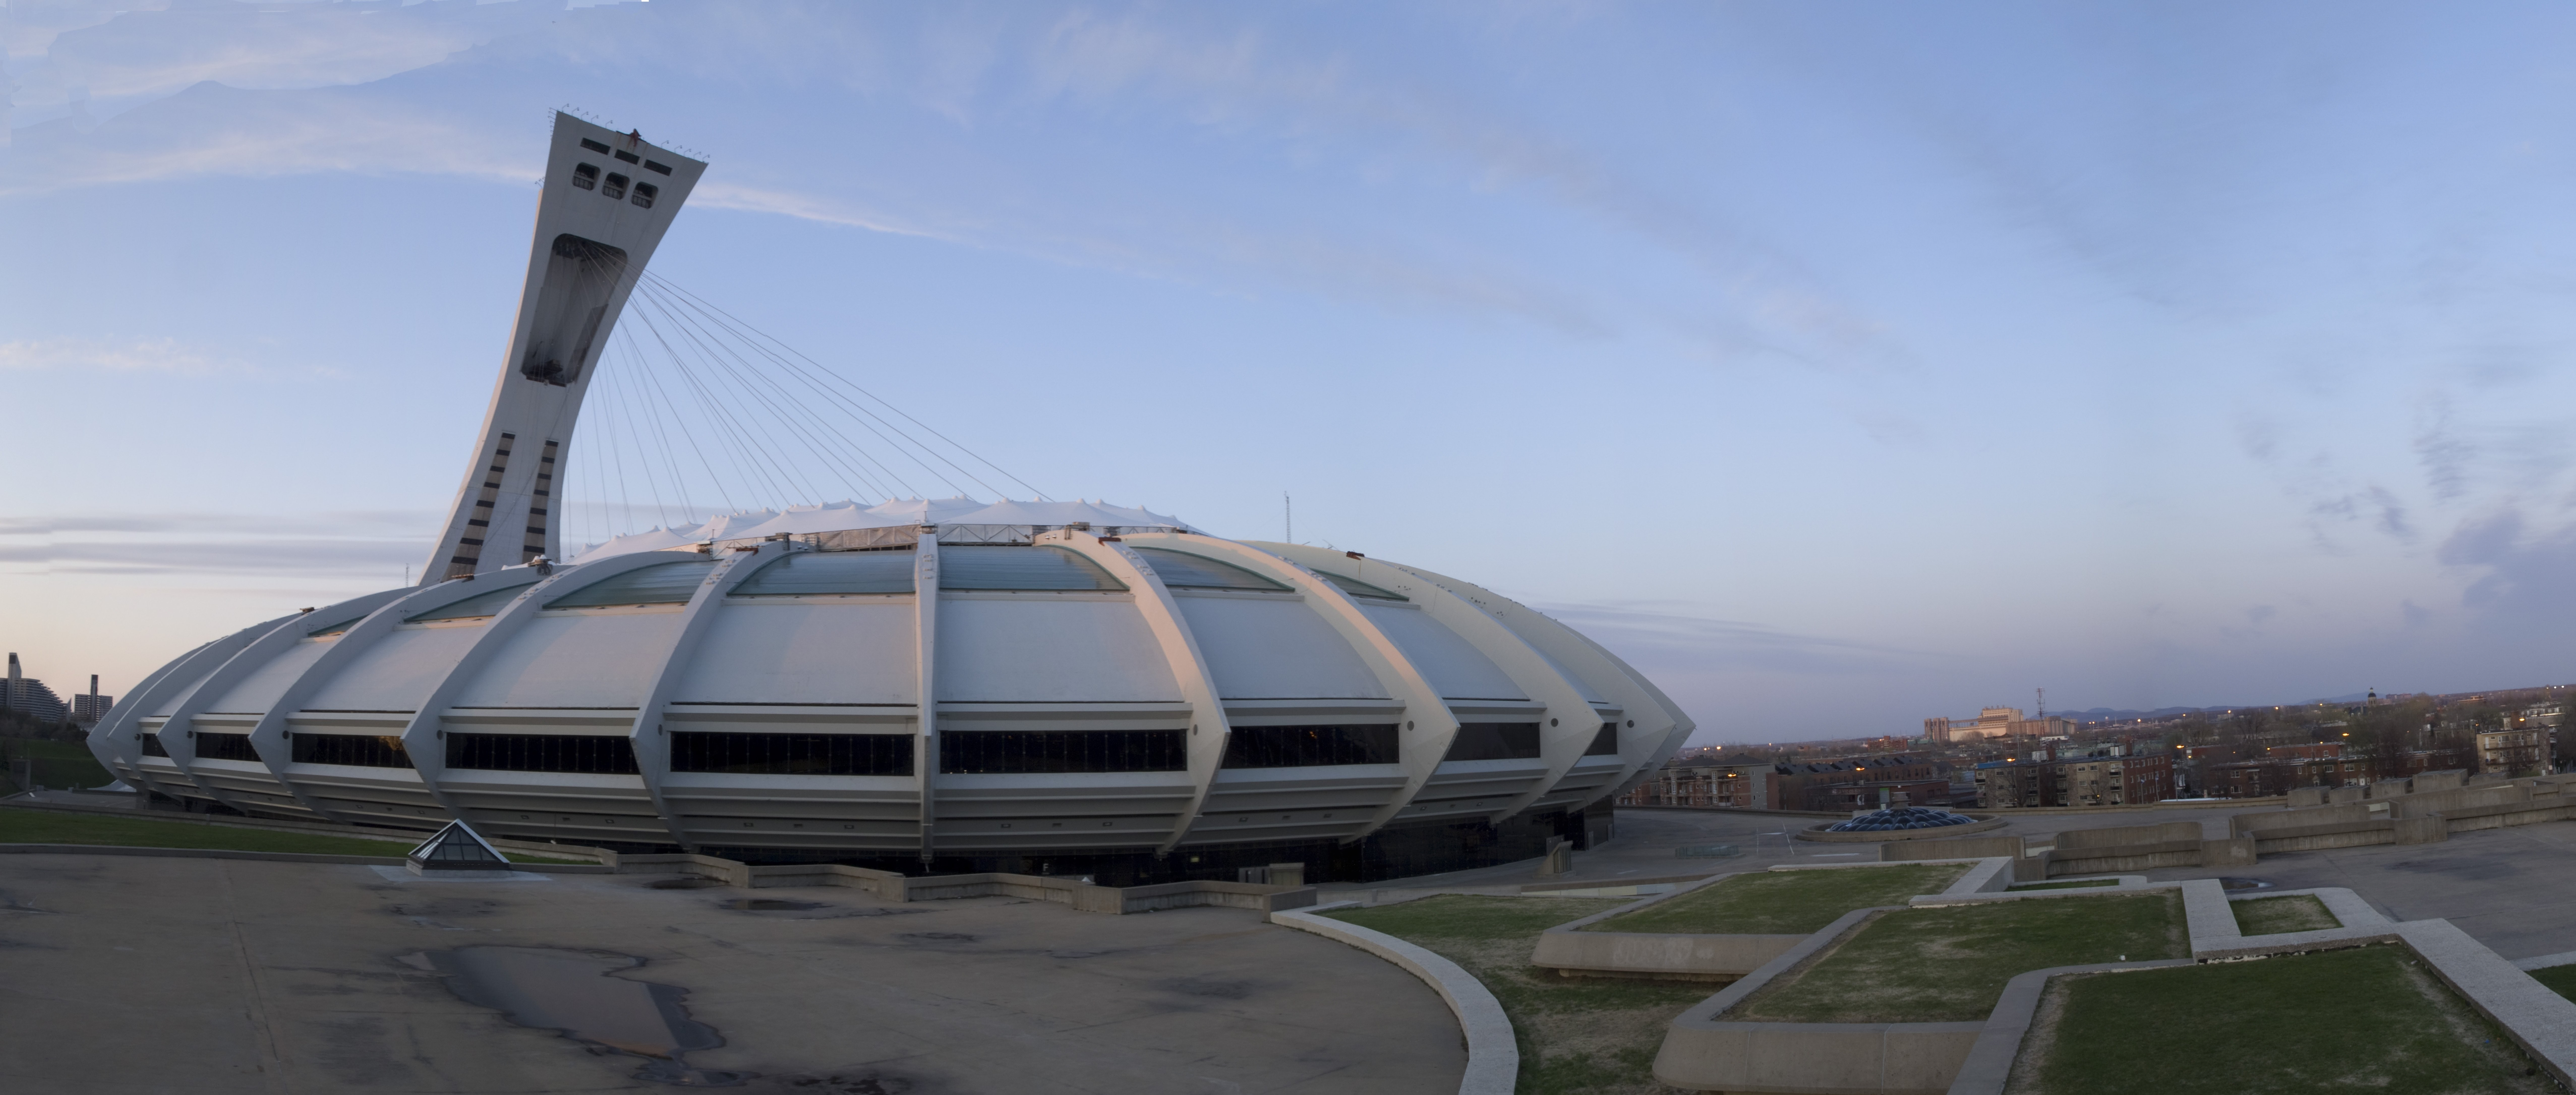 Foto do Estádio Olímpico de Quebec